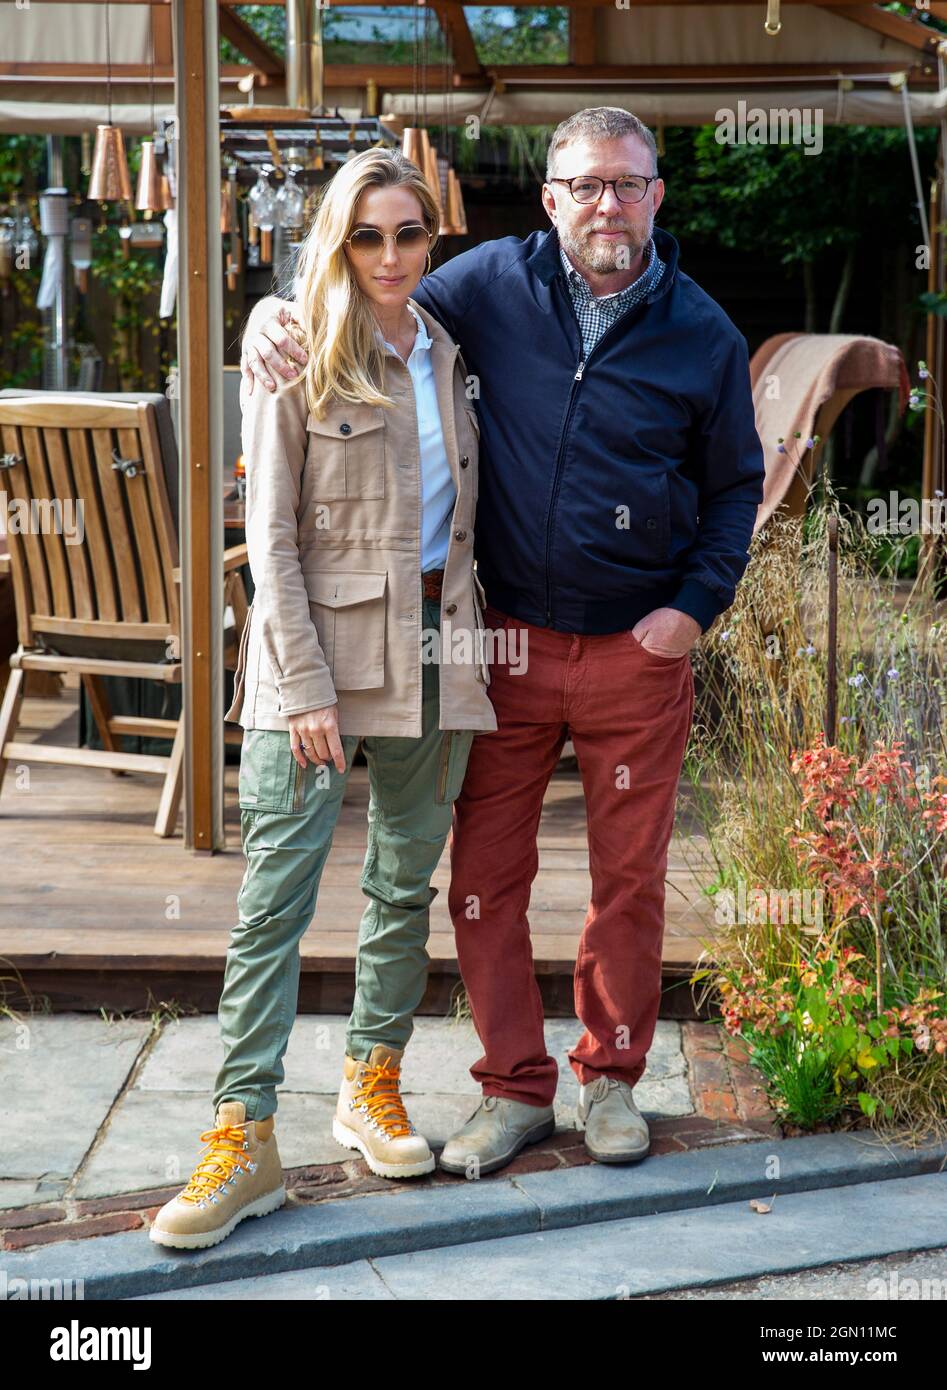 Guy Ritchie, produttore e regista cinematografico, con sua moglie, modello, Jacqui Ainsley al RHS Chelsea Flower Show. Foto Stock